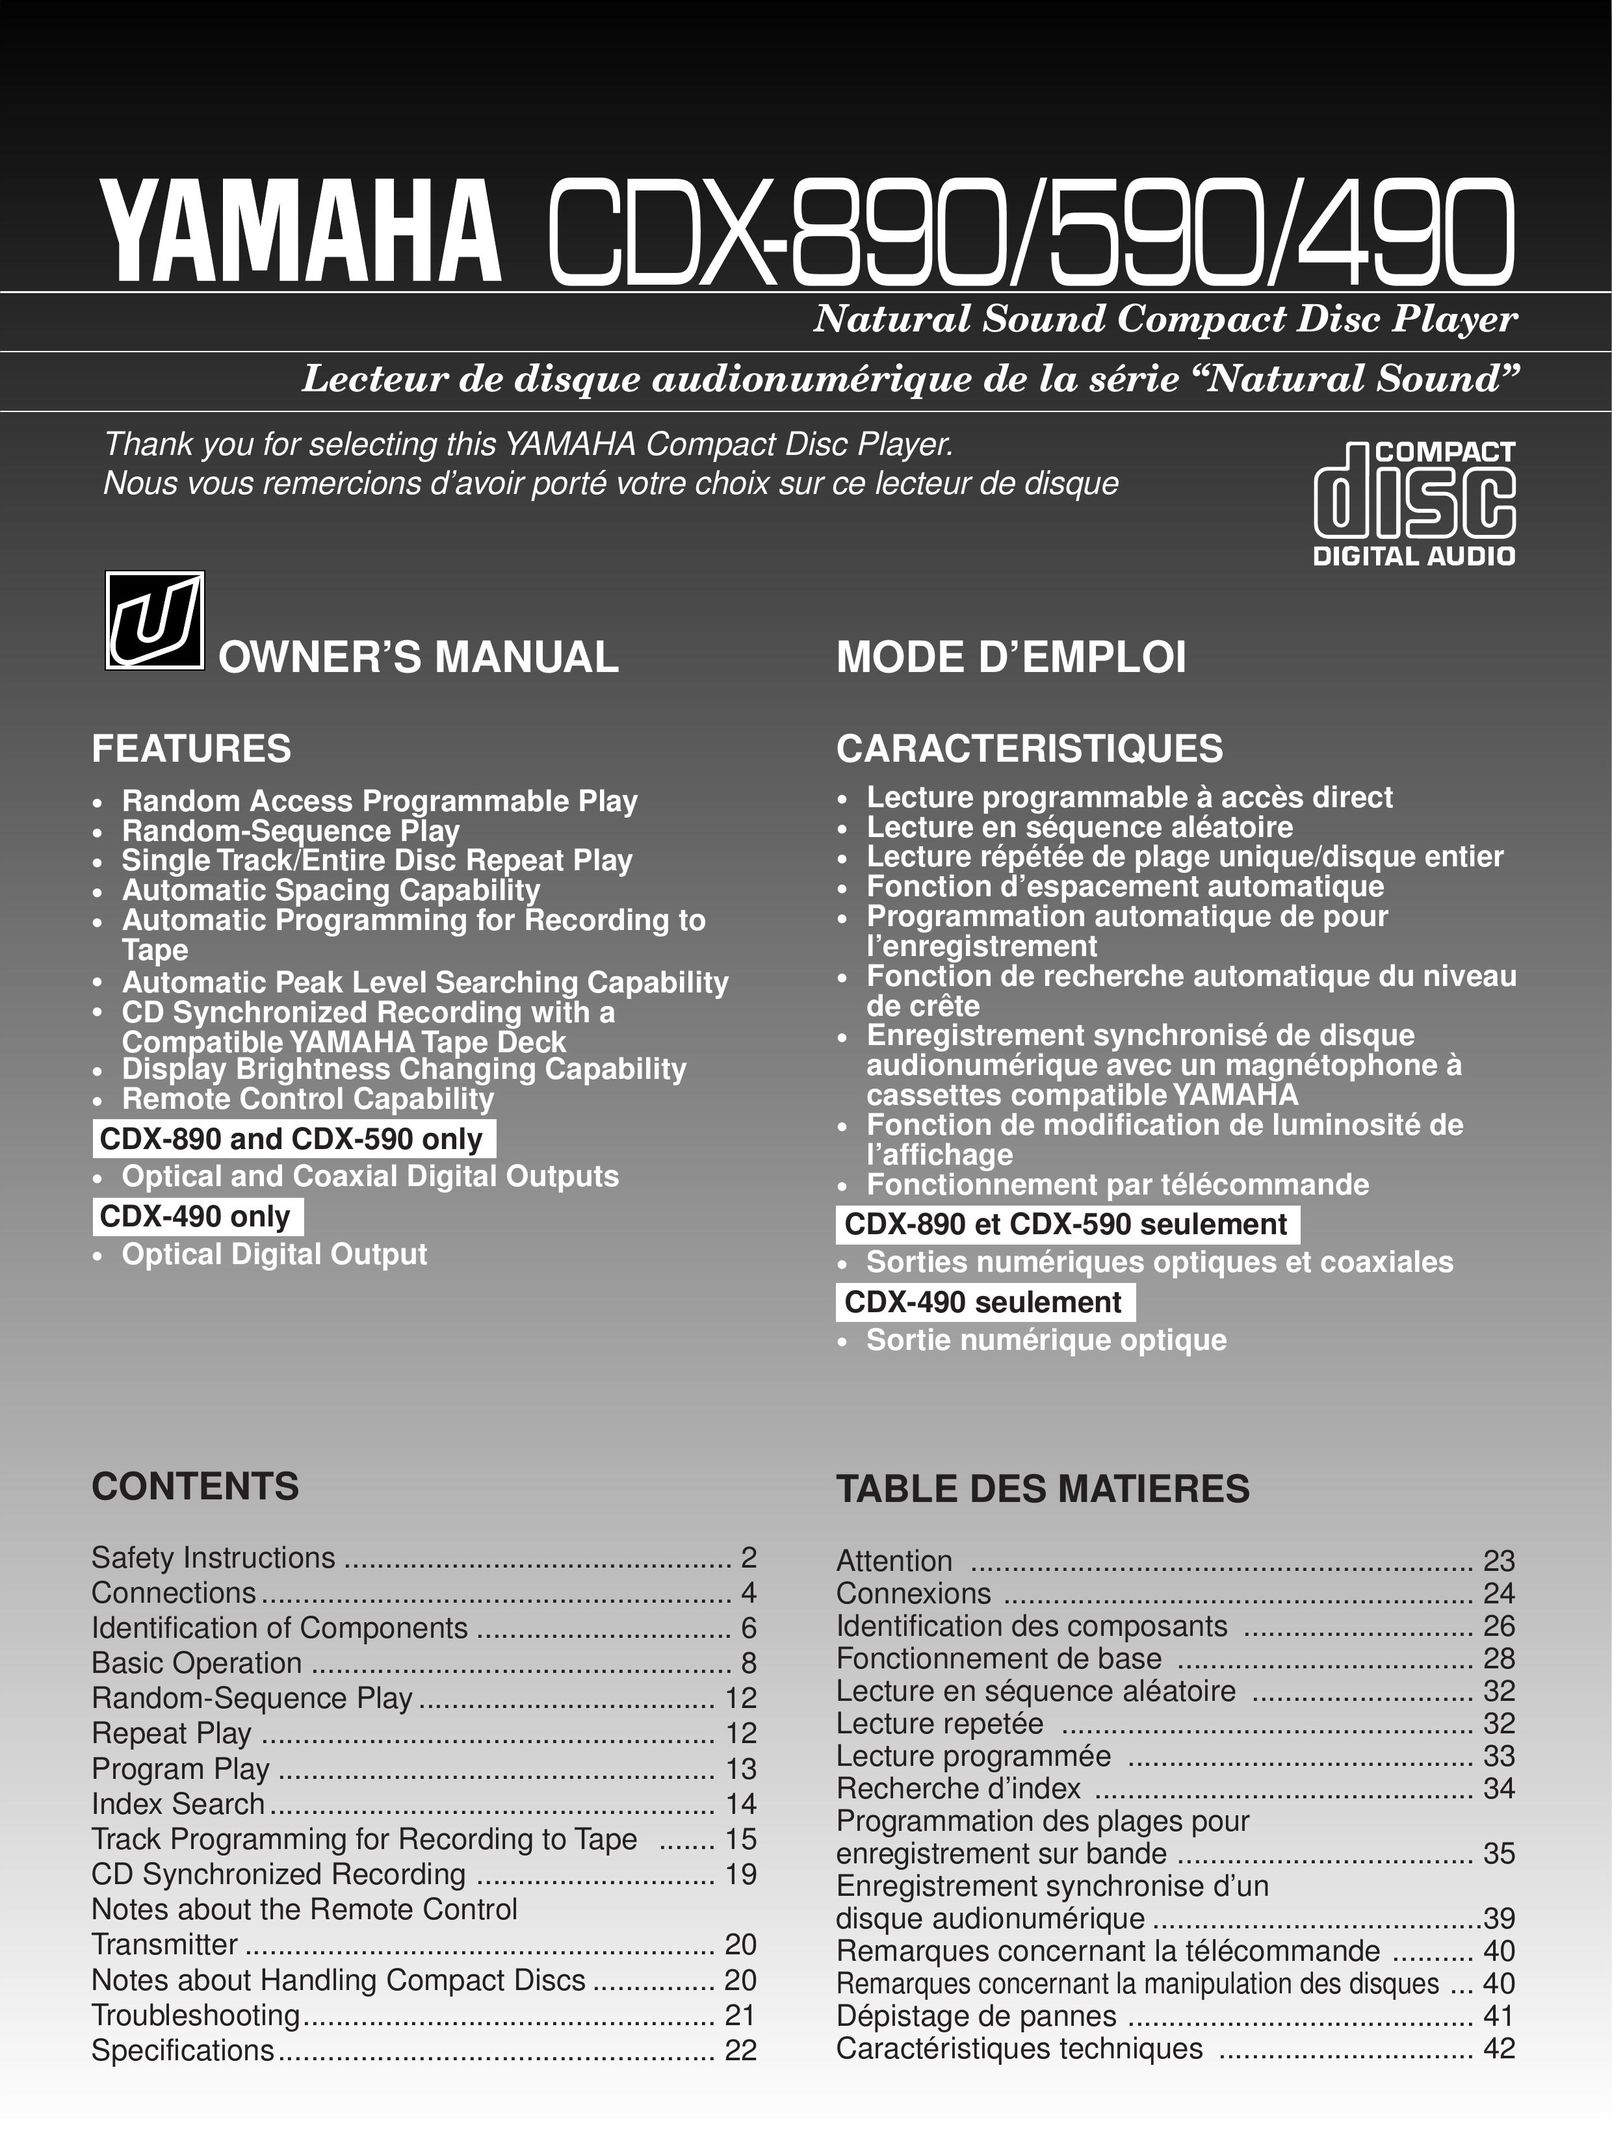 Yamaha CDX-890 CD Player User Manual